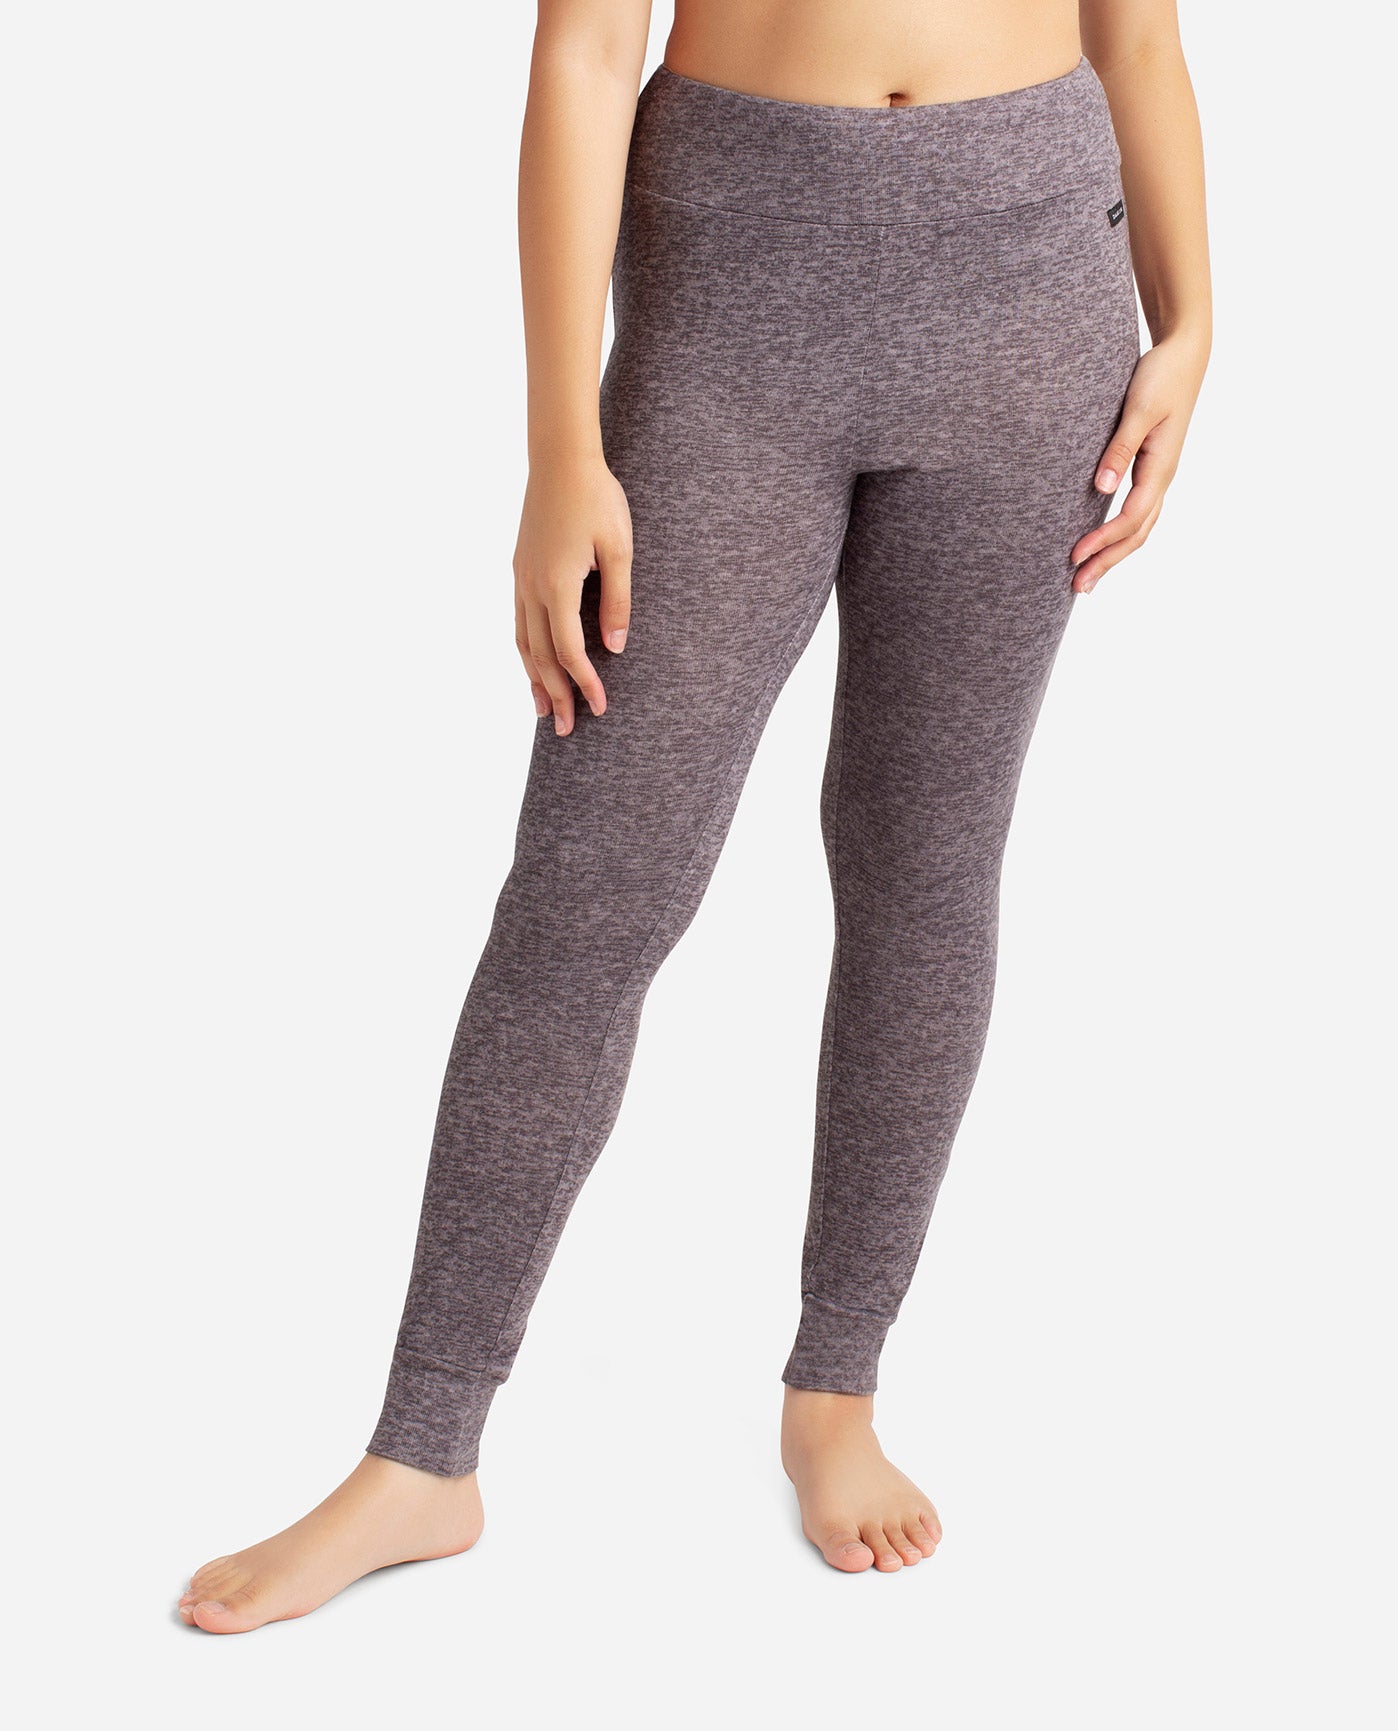 Women's Jeggings Combo Pack Of 2/leggings/Jogger pants for